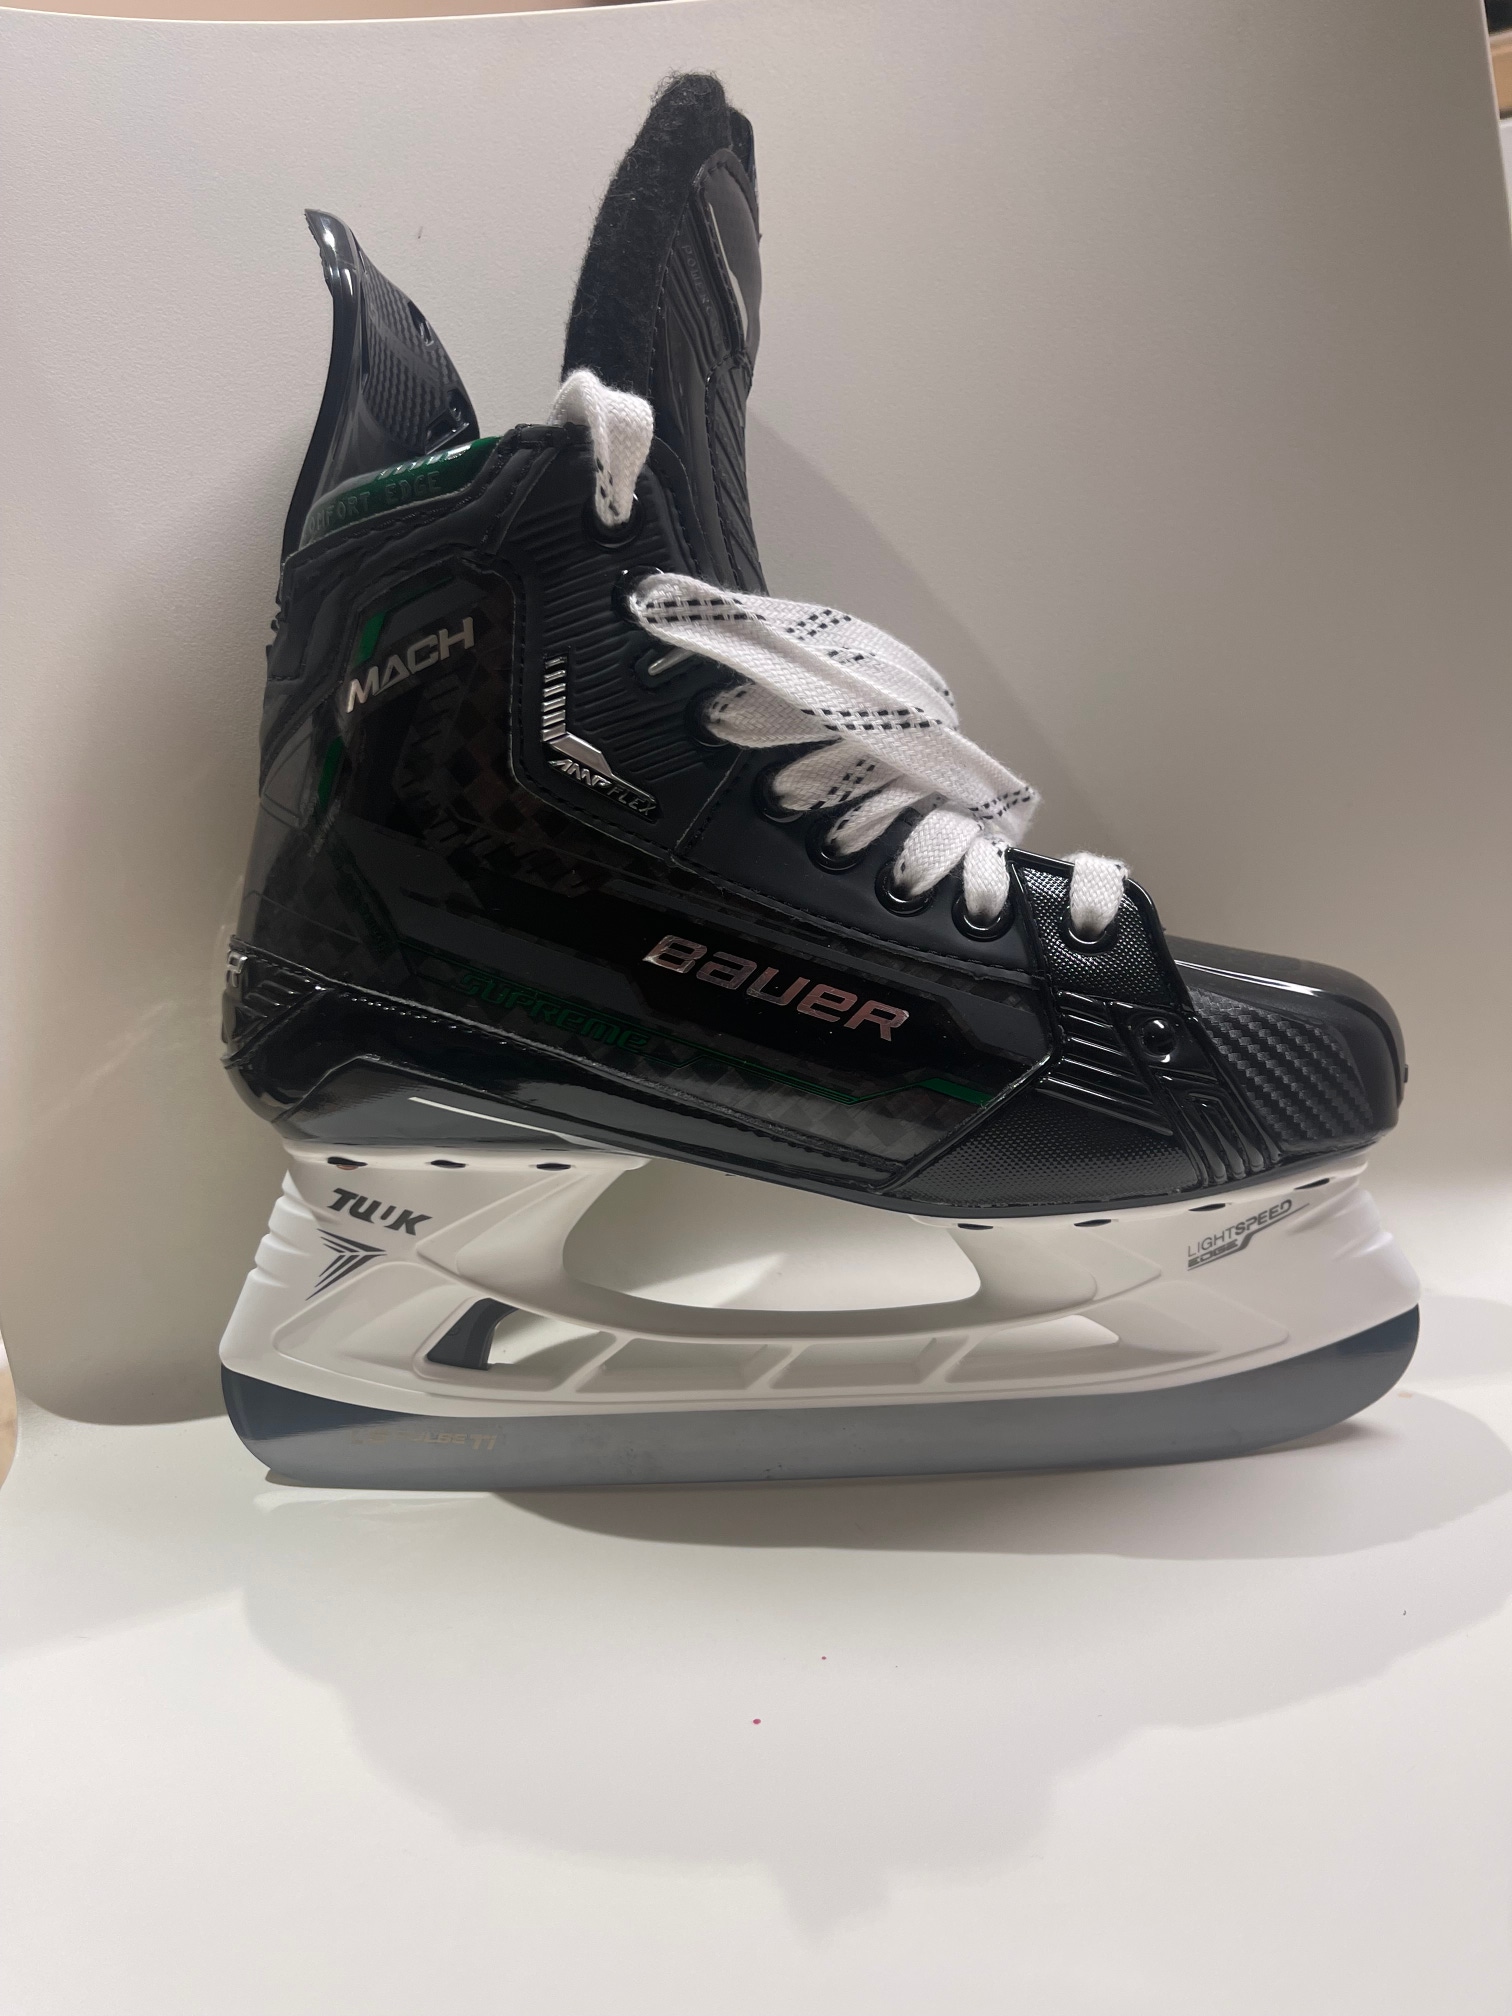 New Bauer Supreme Mach Hockey Skates Size 4.5